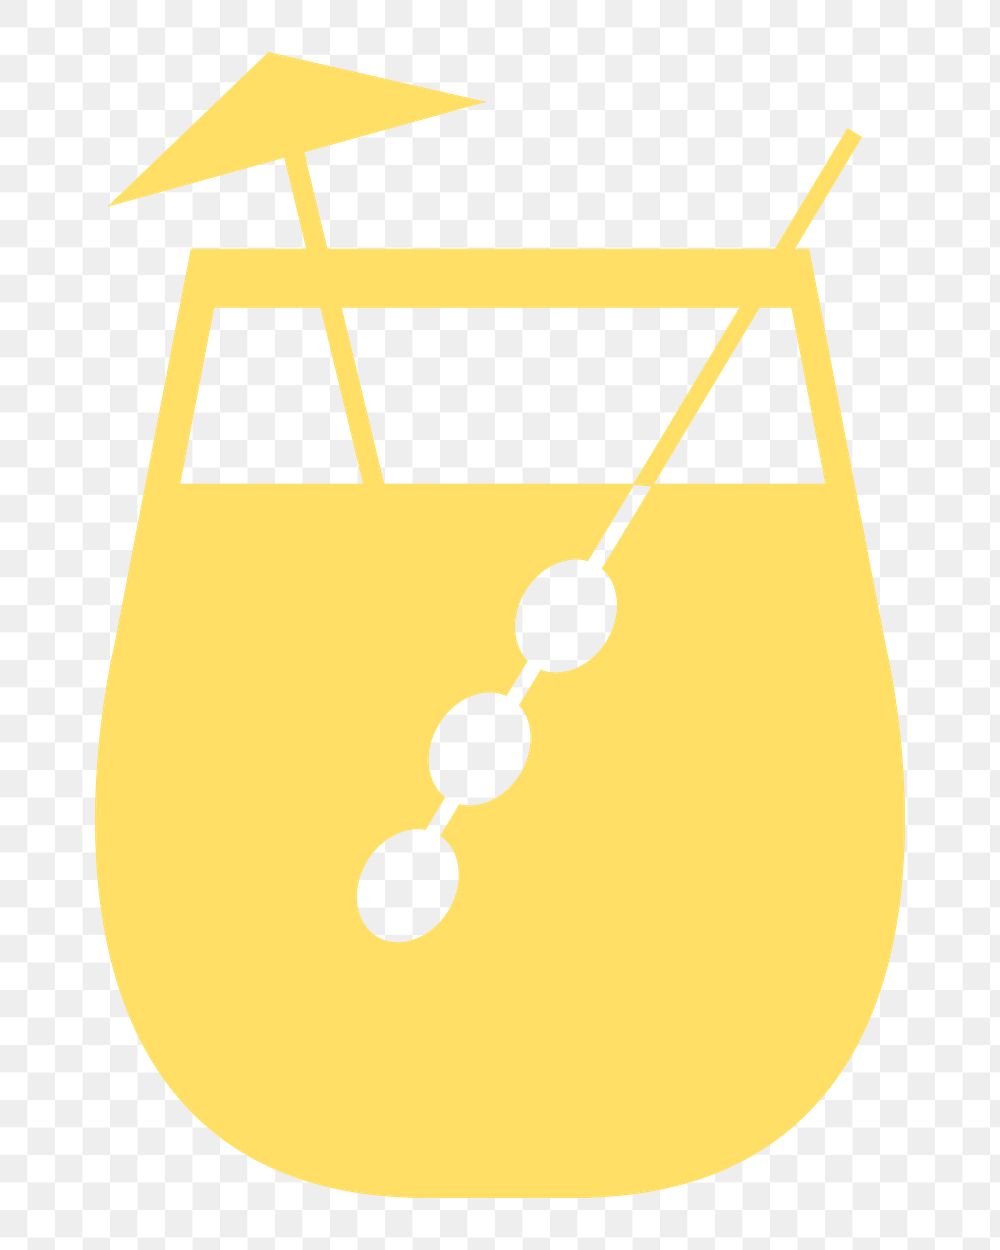 PNG Umbrella drink cocktail glass illustration sticker, transparent background